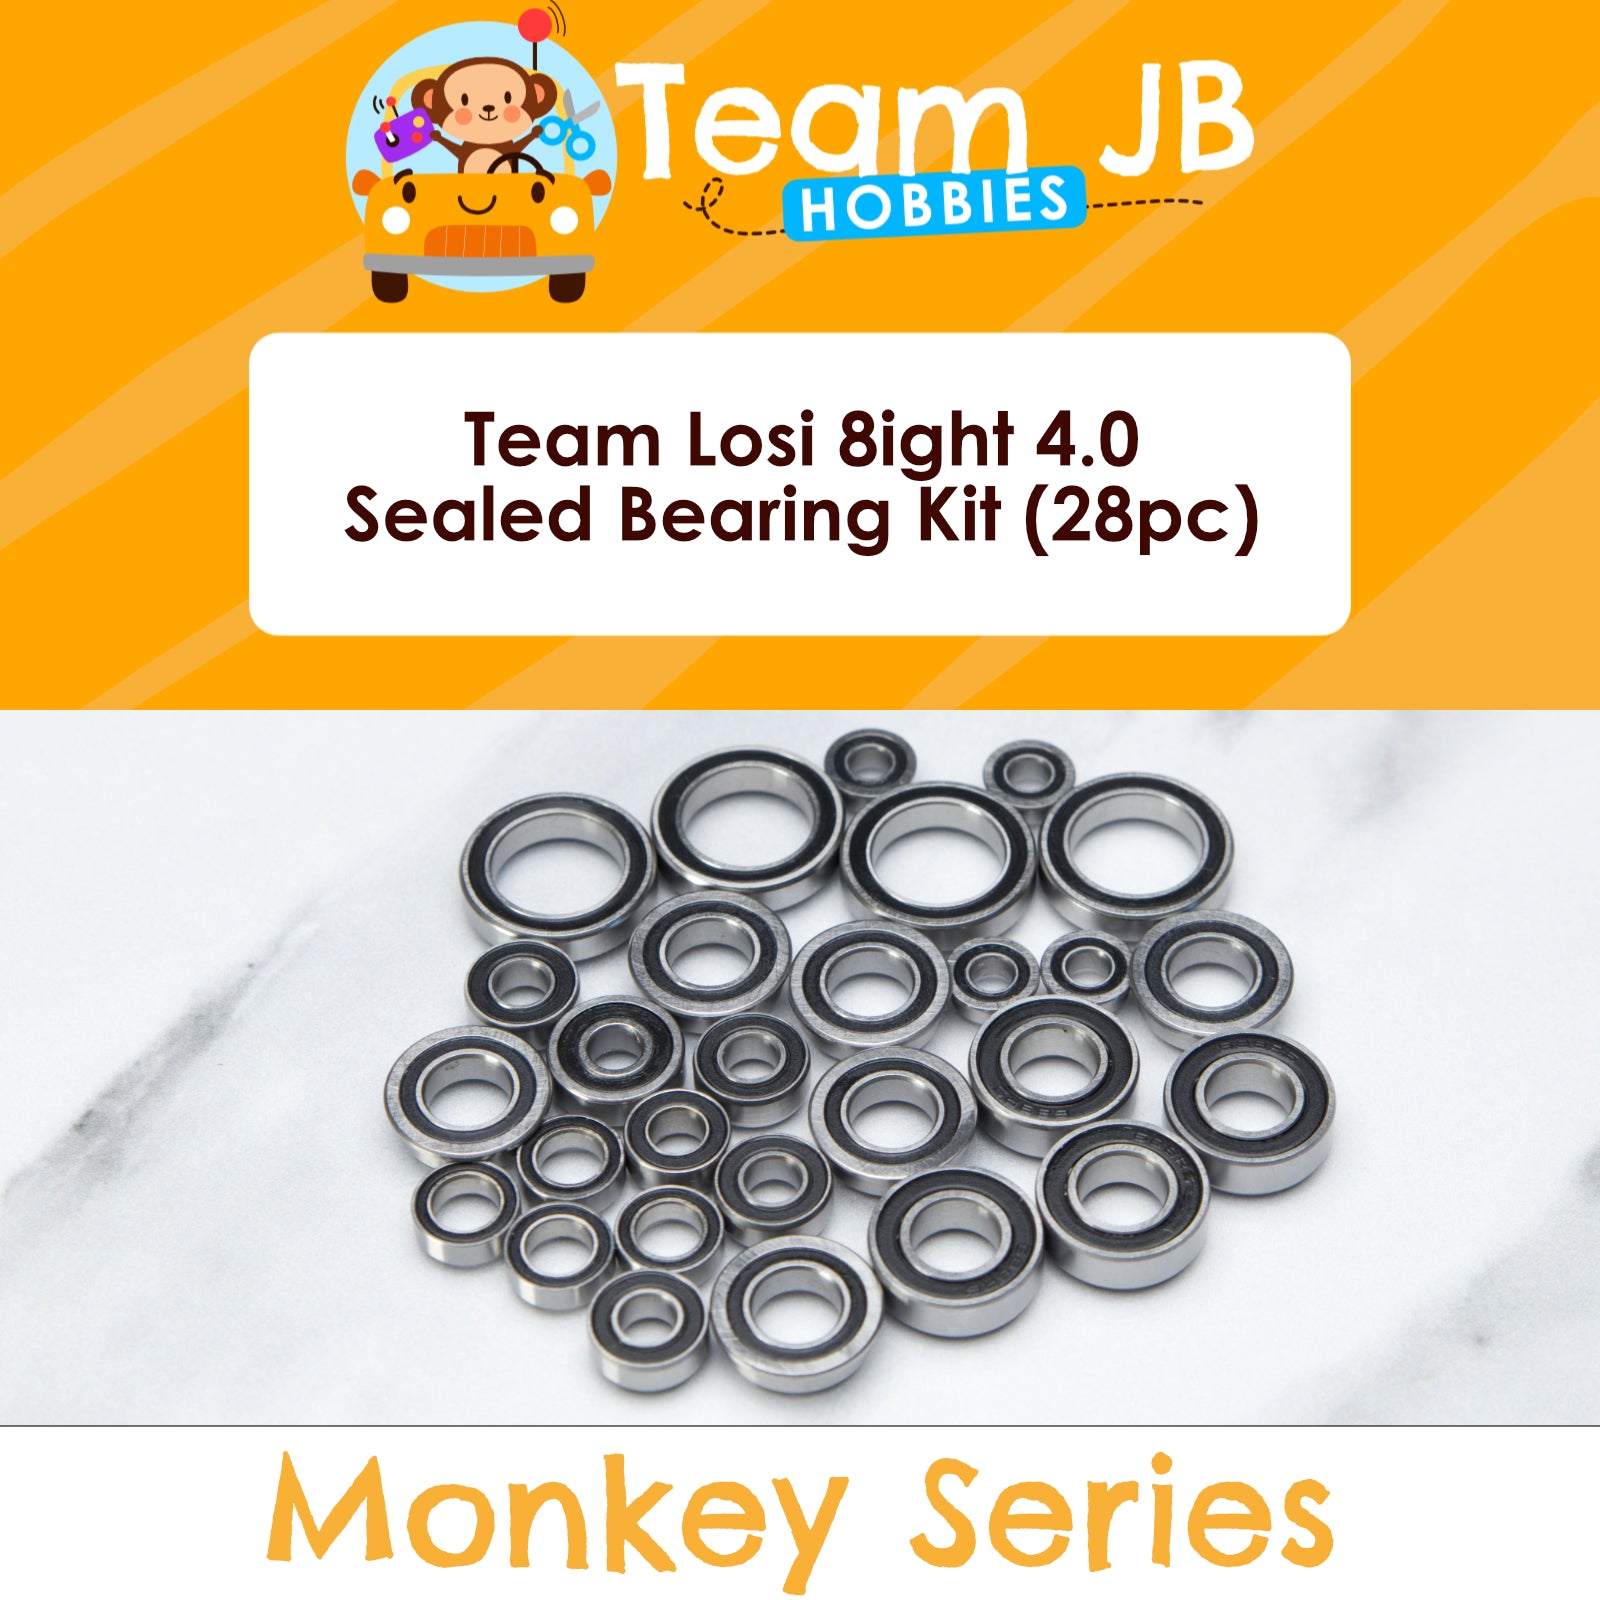 Team Losi 8ight 4.0 - Sealed Bearing Kit